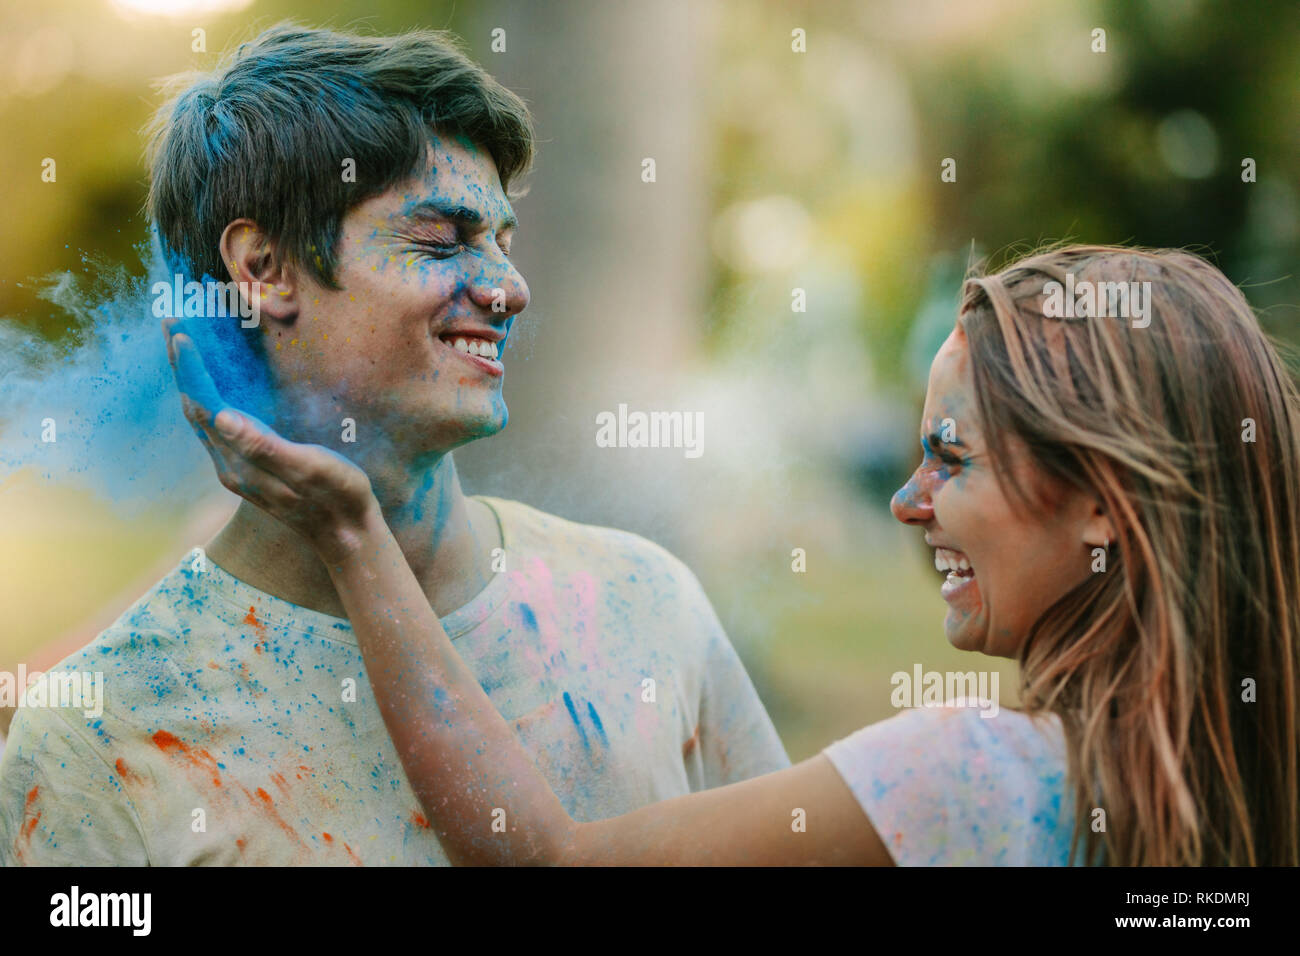 Lächelnde Frau, die Farbe zu einem Mann. Glückliches Paar spielen Holi mit Puder Farben in einem Park. Stockfoto